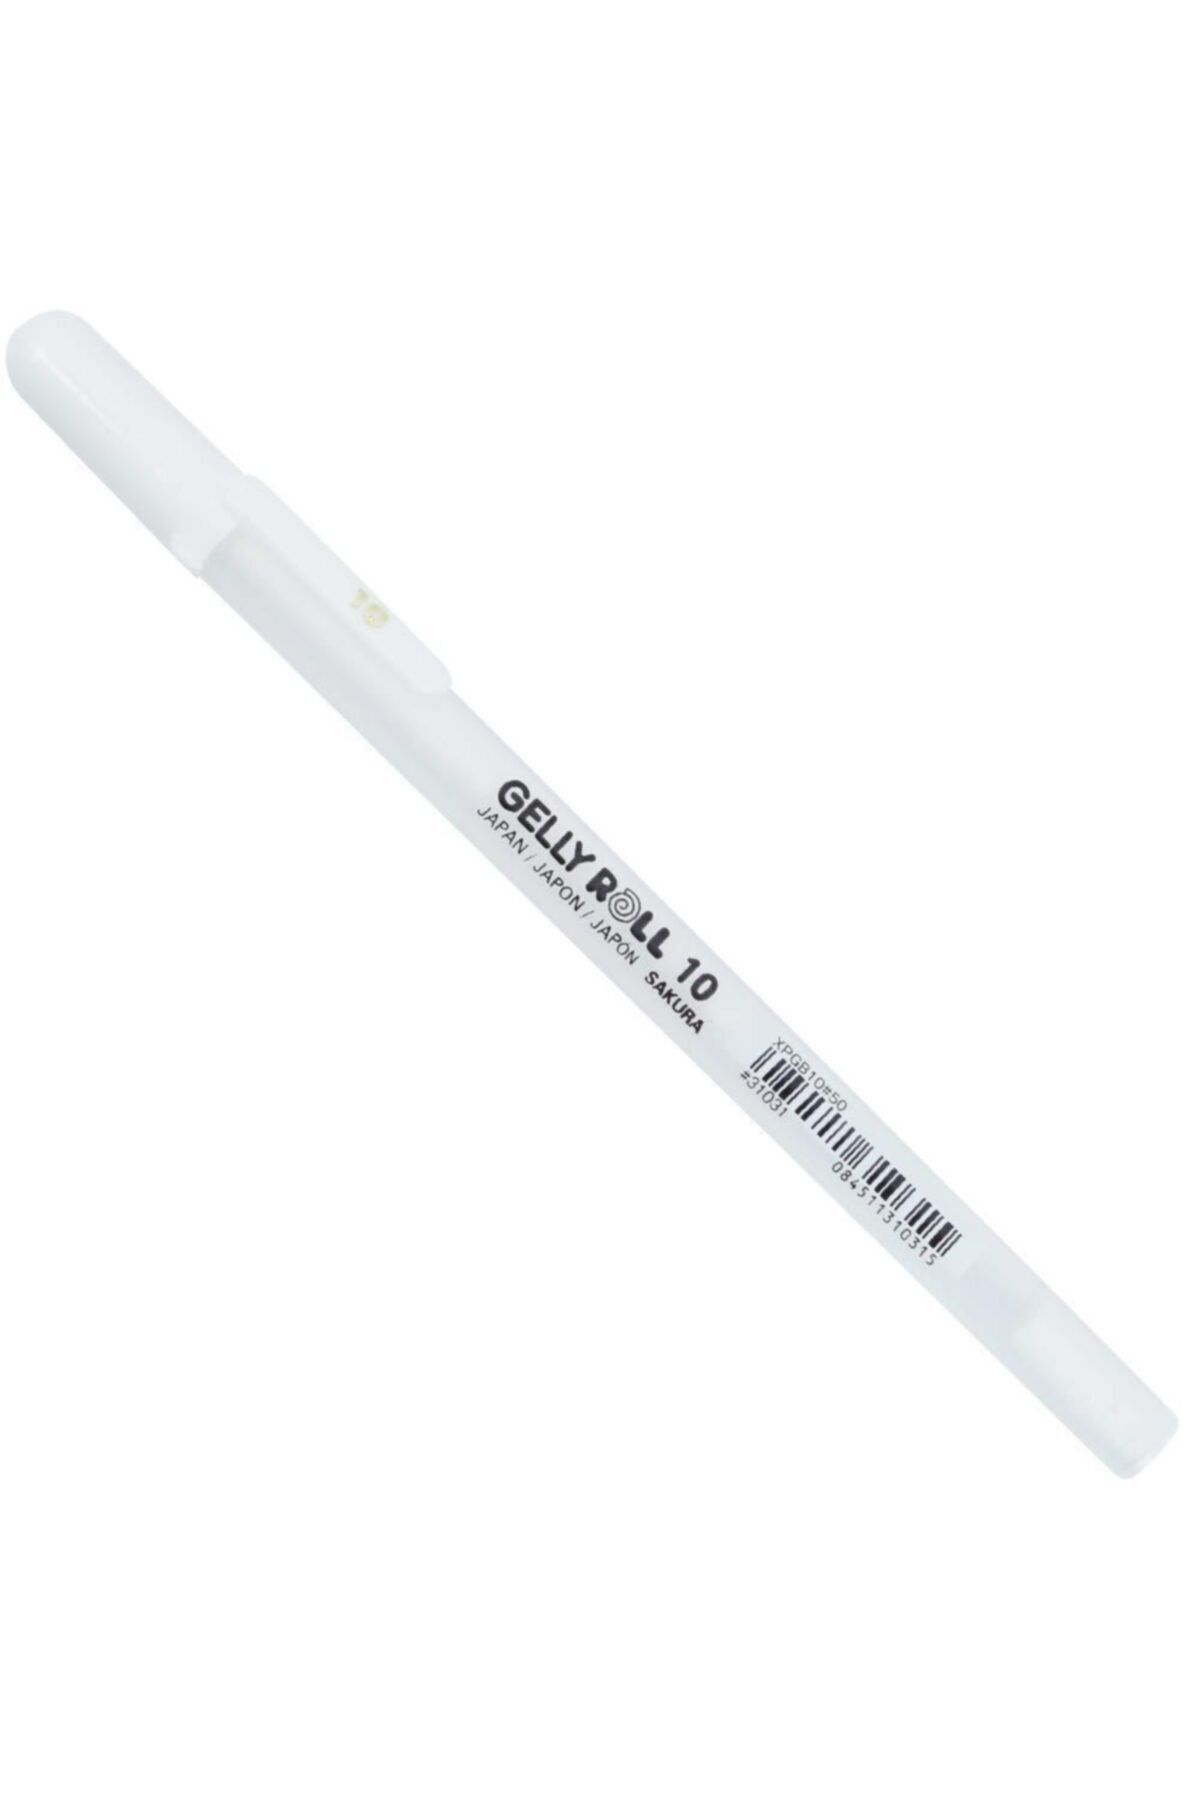 Sakura Gelly Roll Basic White 10 Bold Beyaz Jel Mürekkepli Kalem 0,5mm